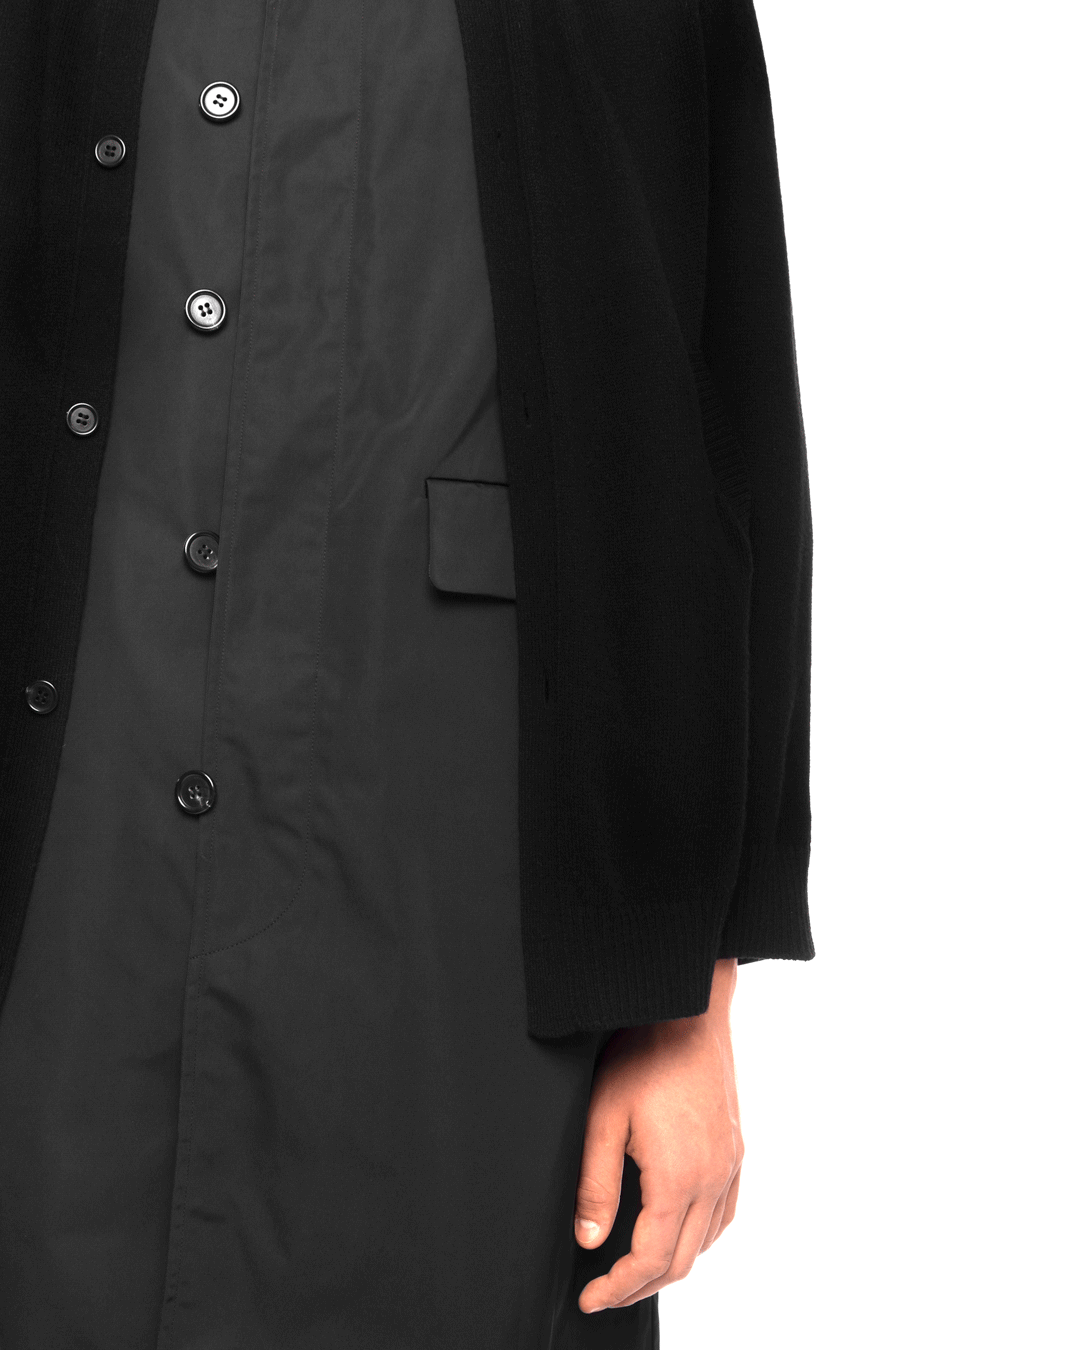 UC2A4311 AW21 Mens Coat Black